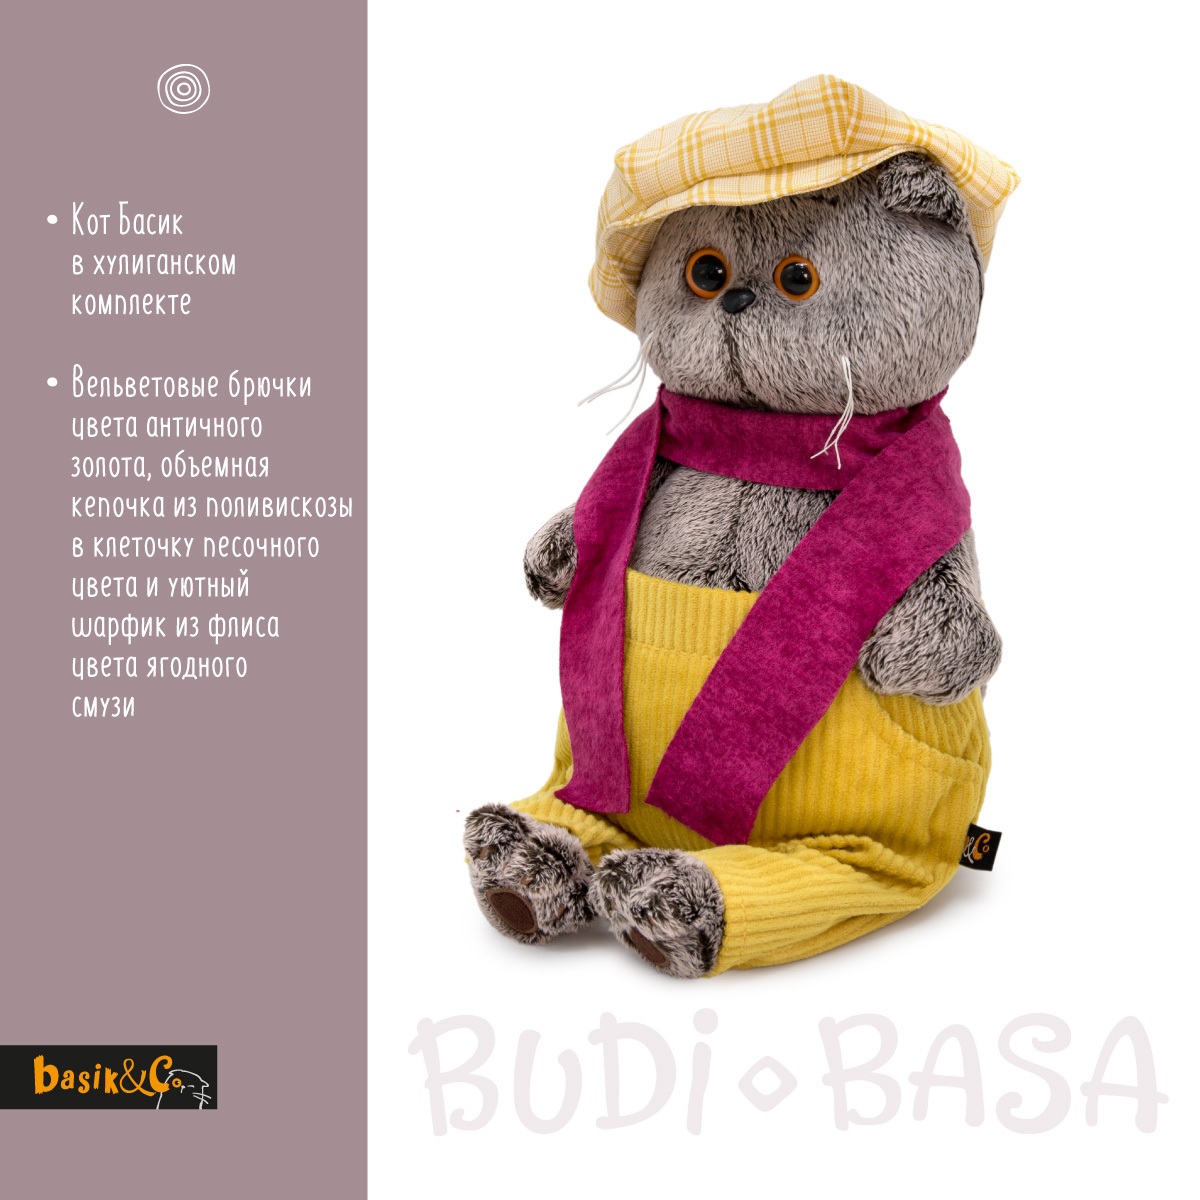 Мягкая игрушка BUDI BASA Басик в кепке и шарфе 25 см Ks25-224 - фото 3